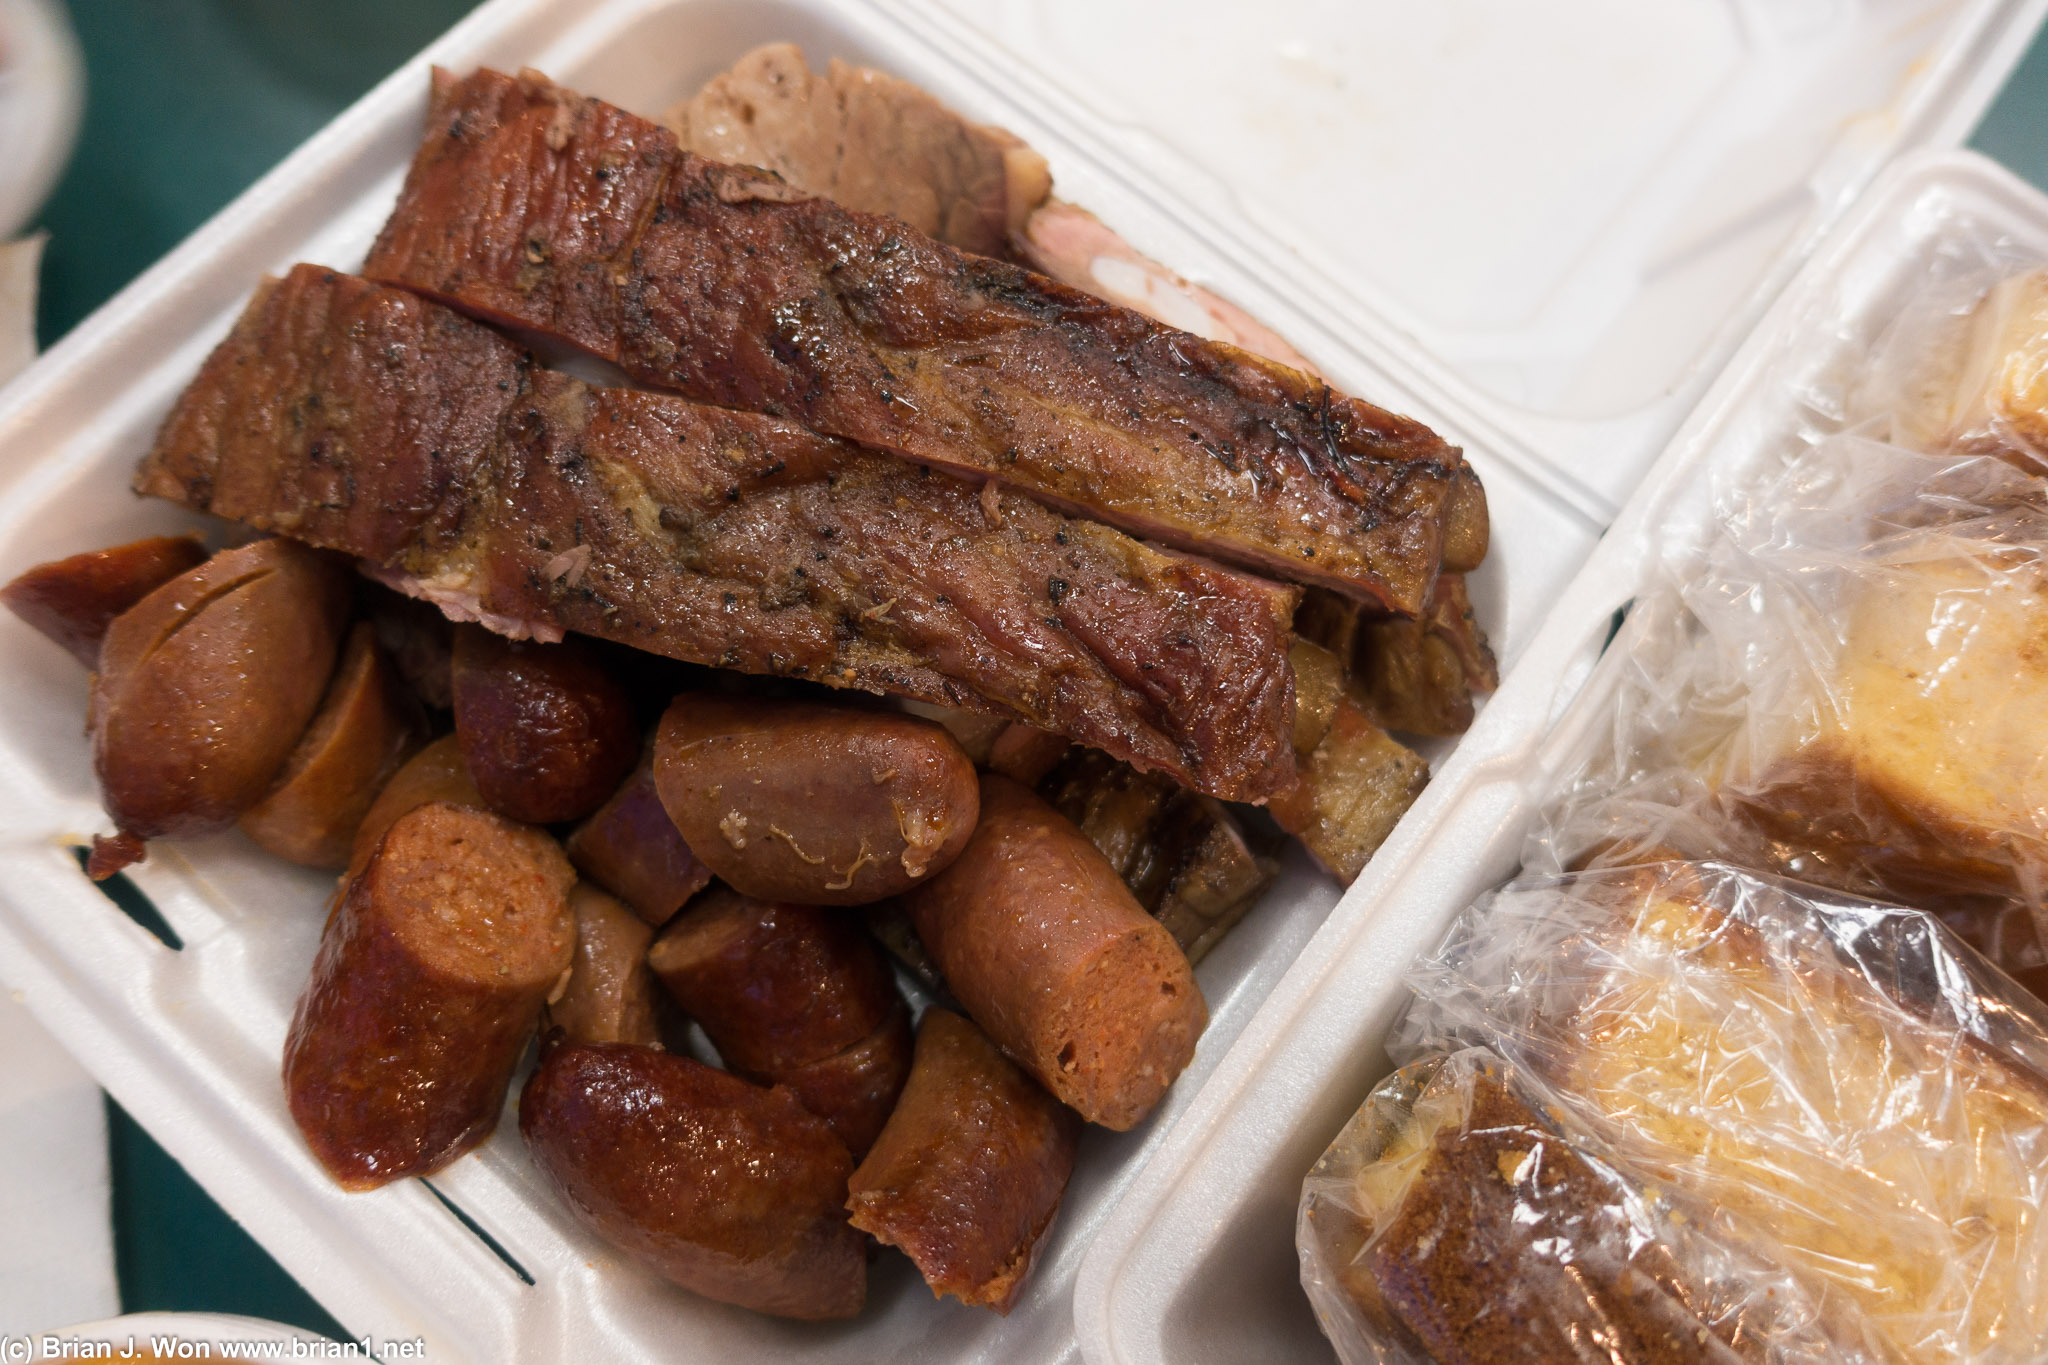 Pork ribs, rib tips, brisket, and sausage.